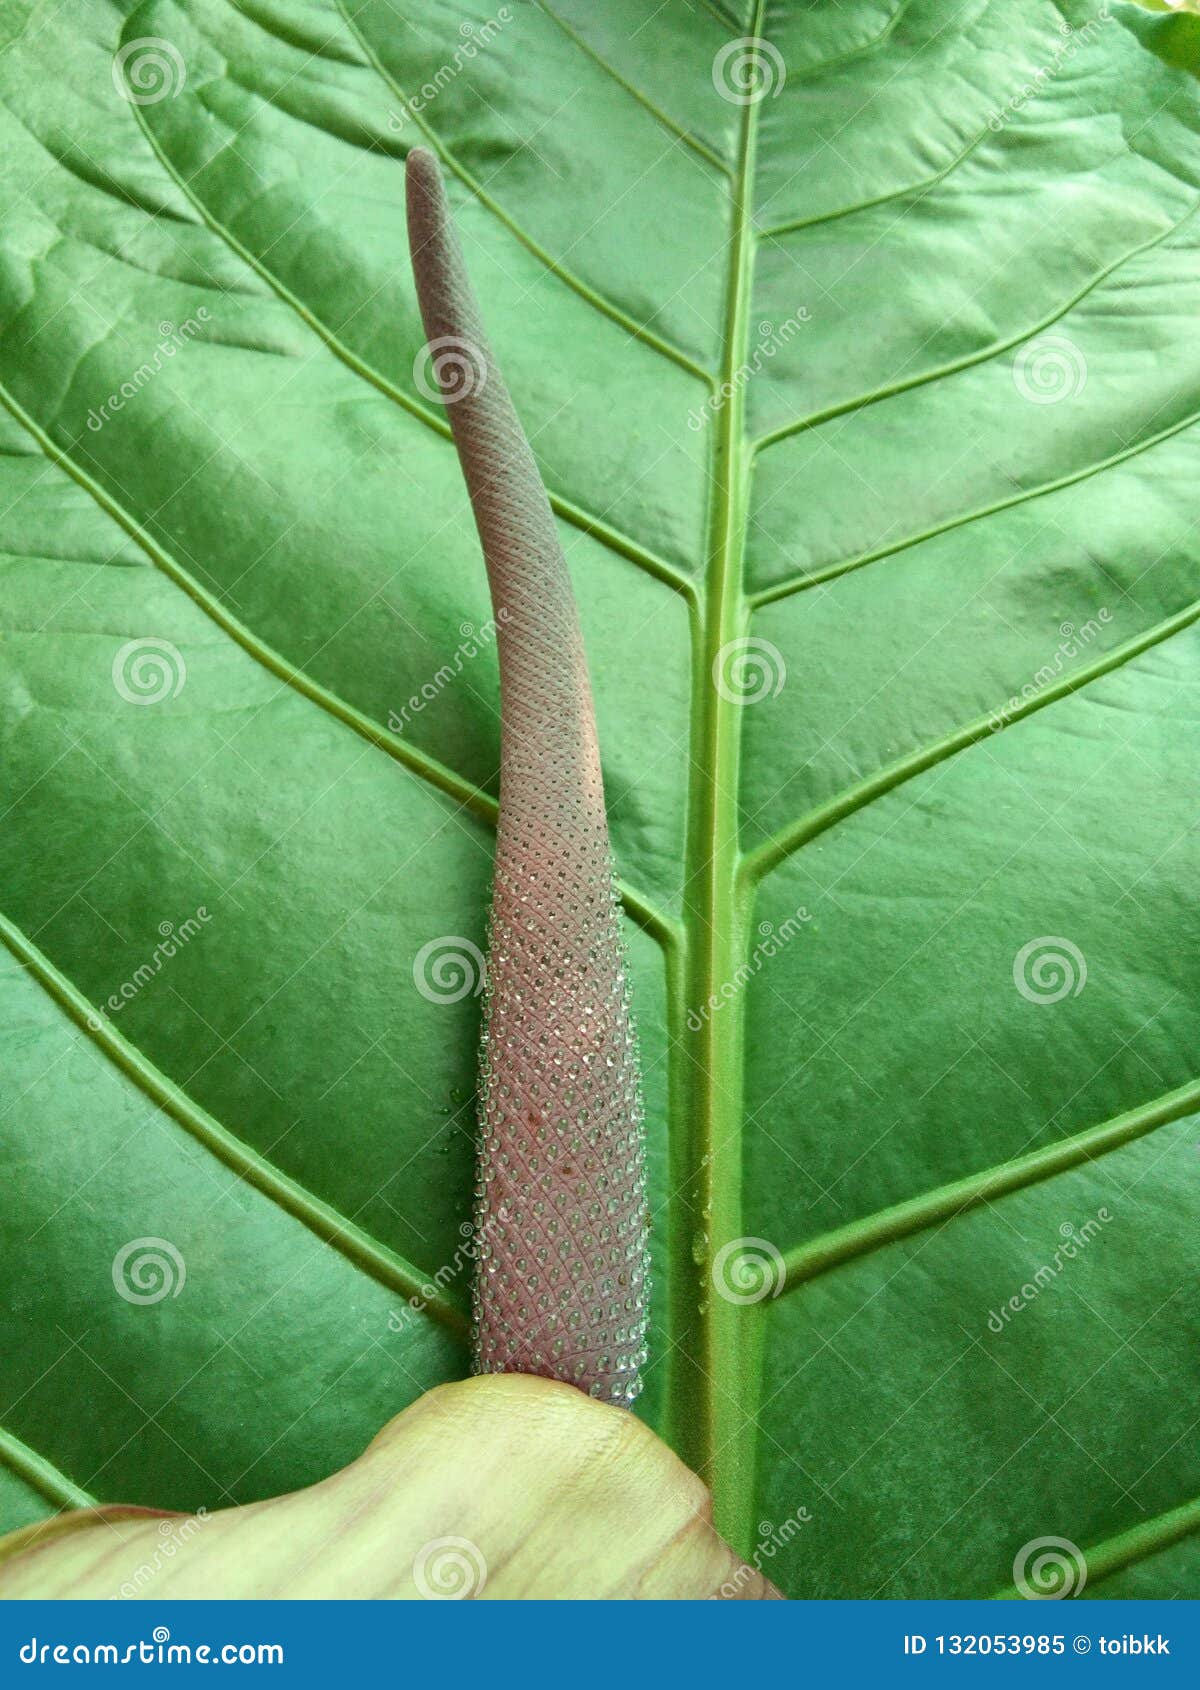 Flower with Honeydew on Green Leaf of Anthurium Plowmanii, Wave of ...